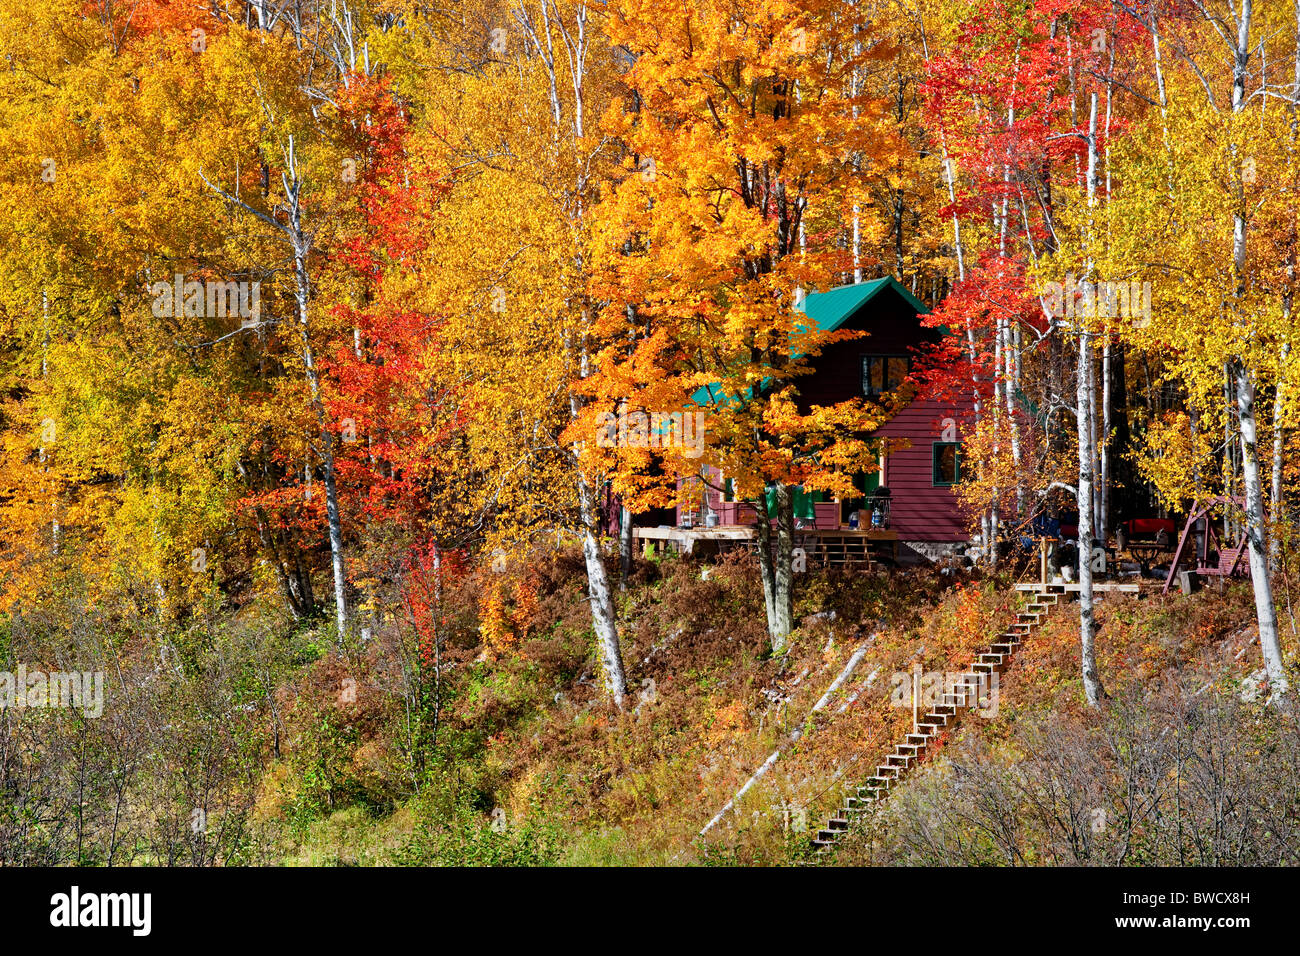 Cabaña rural enmarcadas por brillantes colores de otoño en la Península Superior de Michigan. Foto de stock